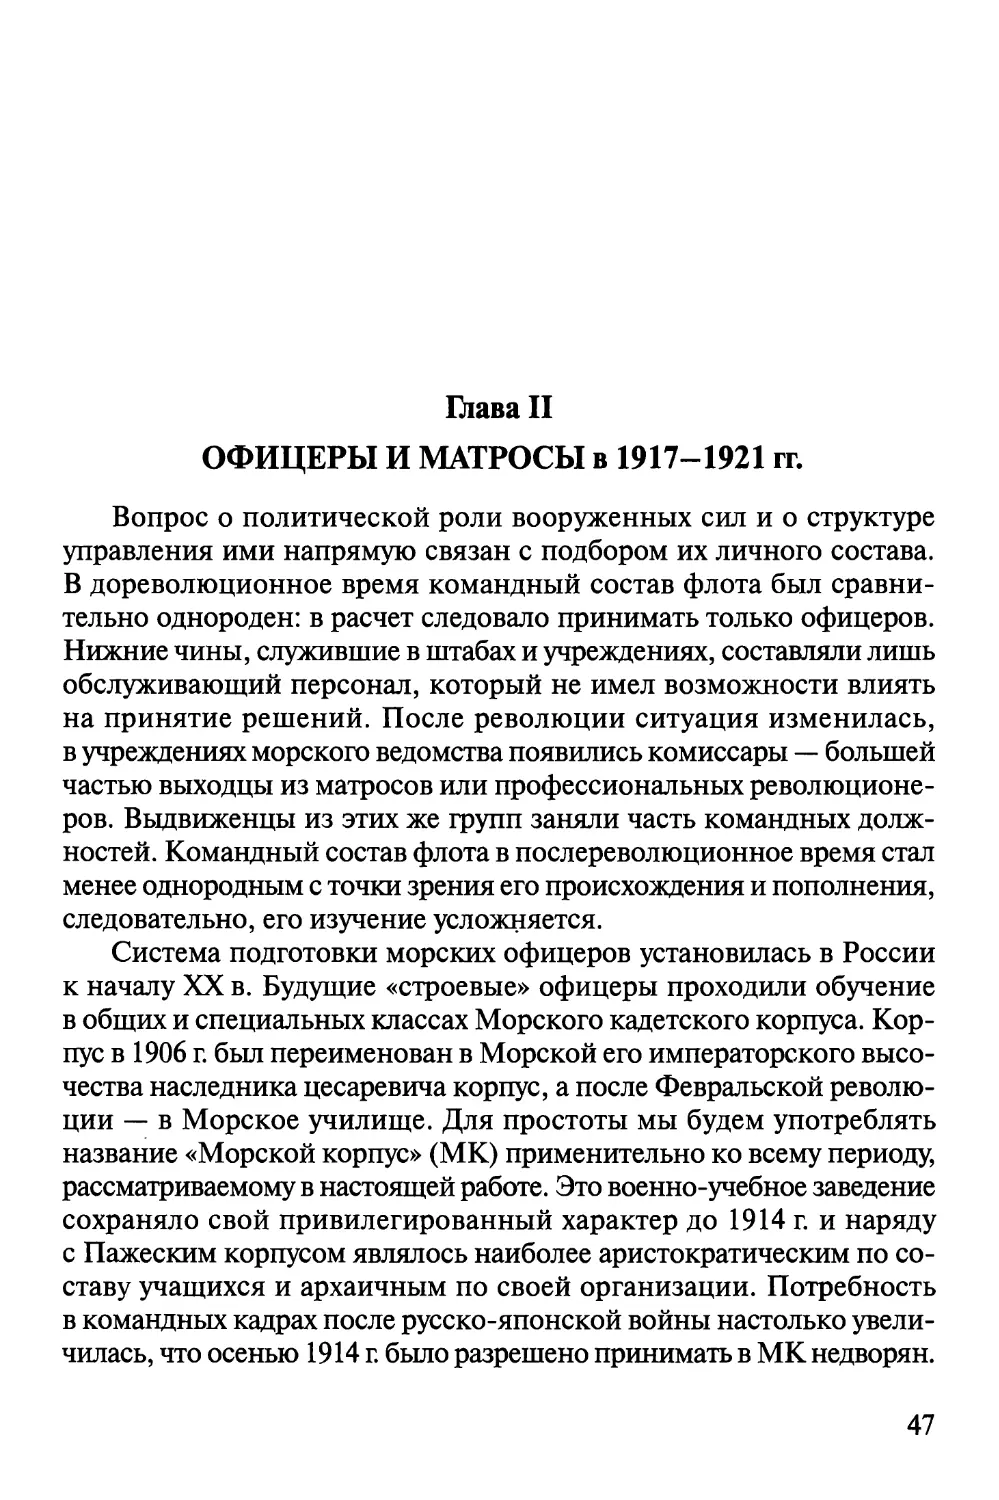 Глава II. Офицеры и матросы в 1917—1921 гг.